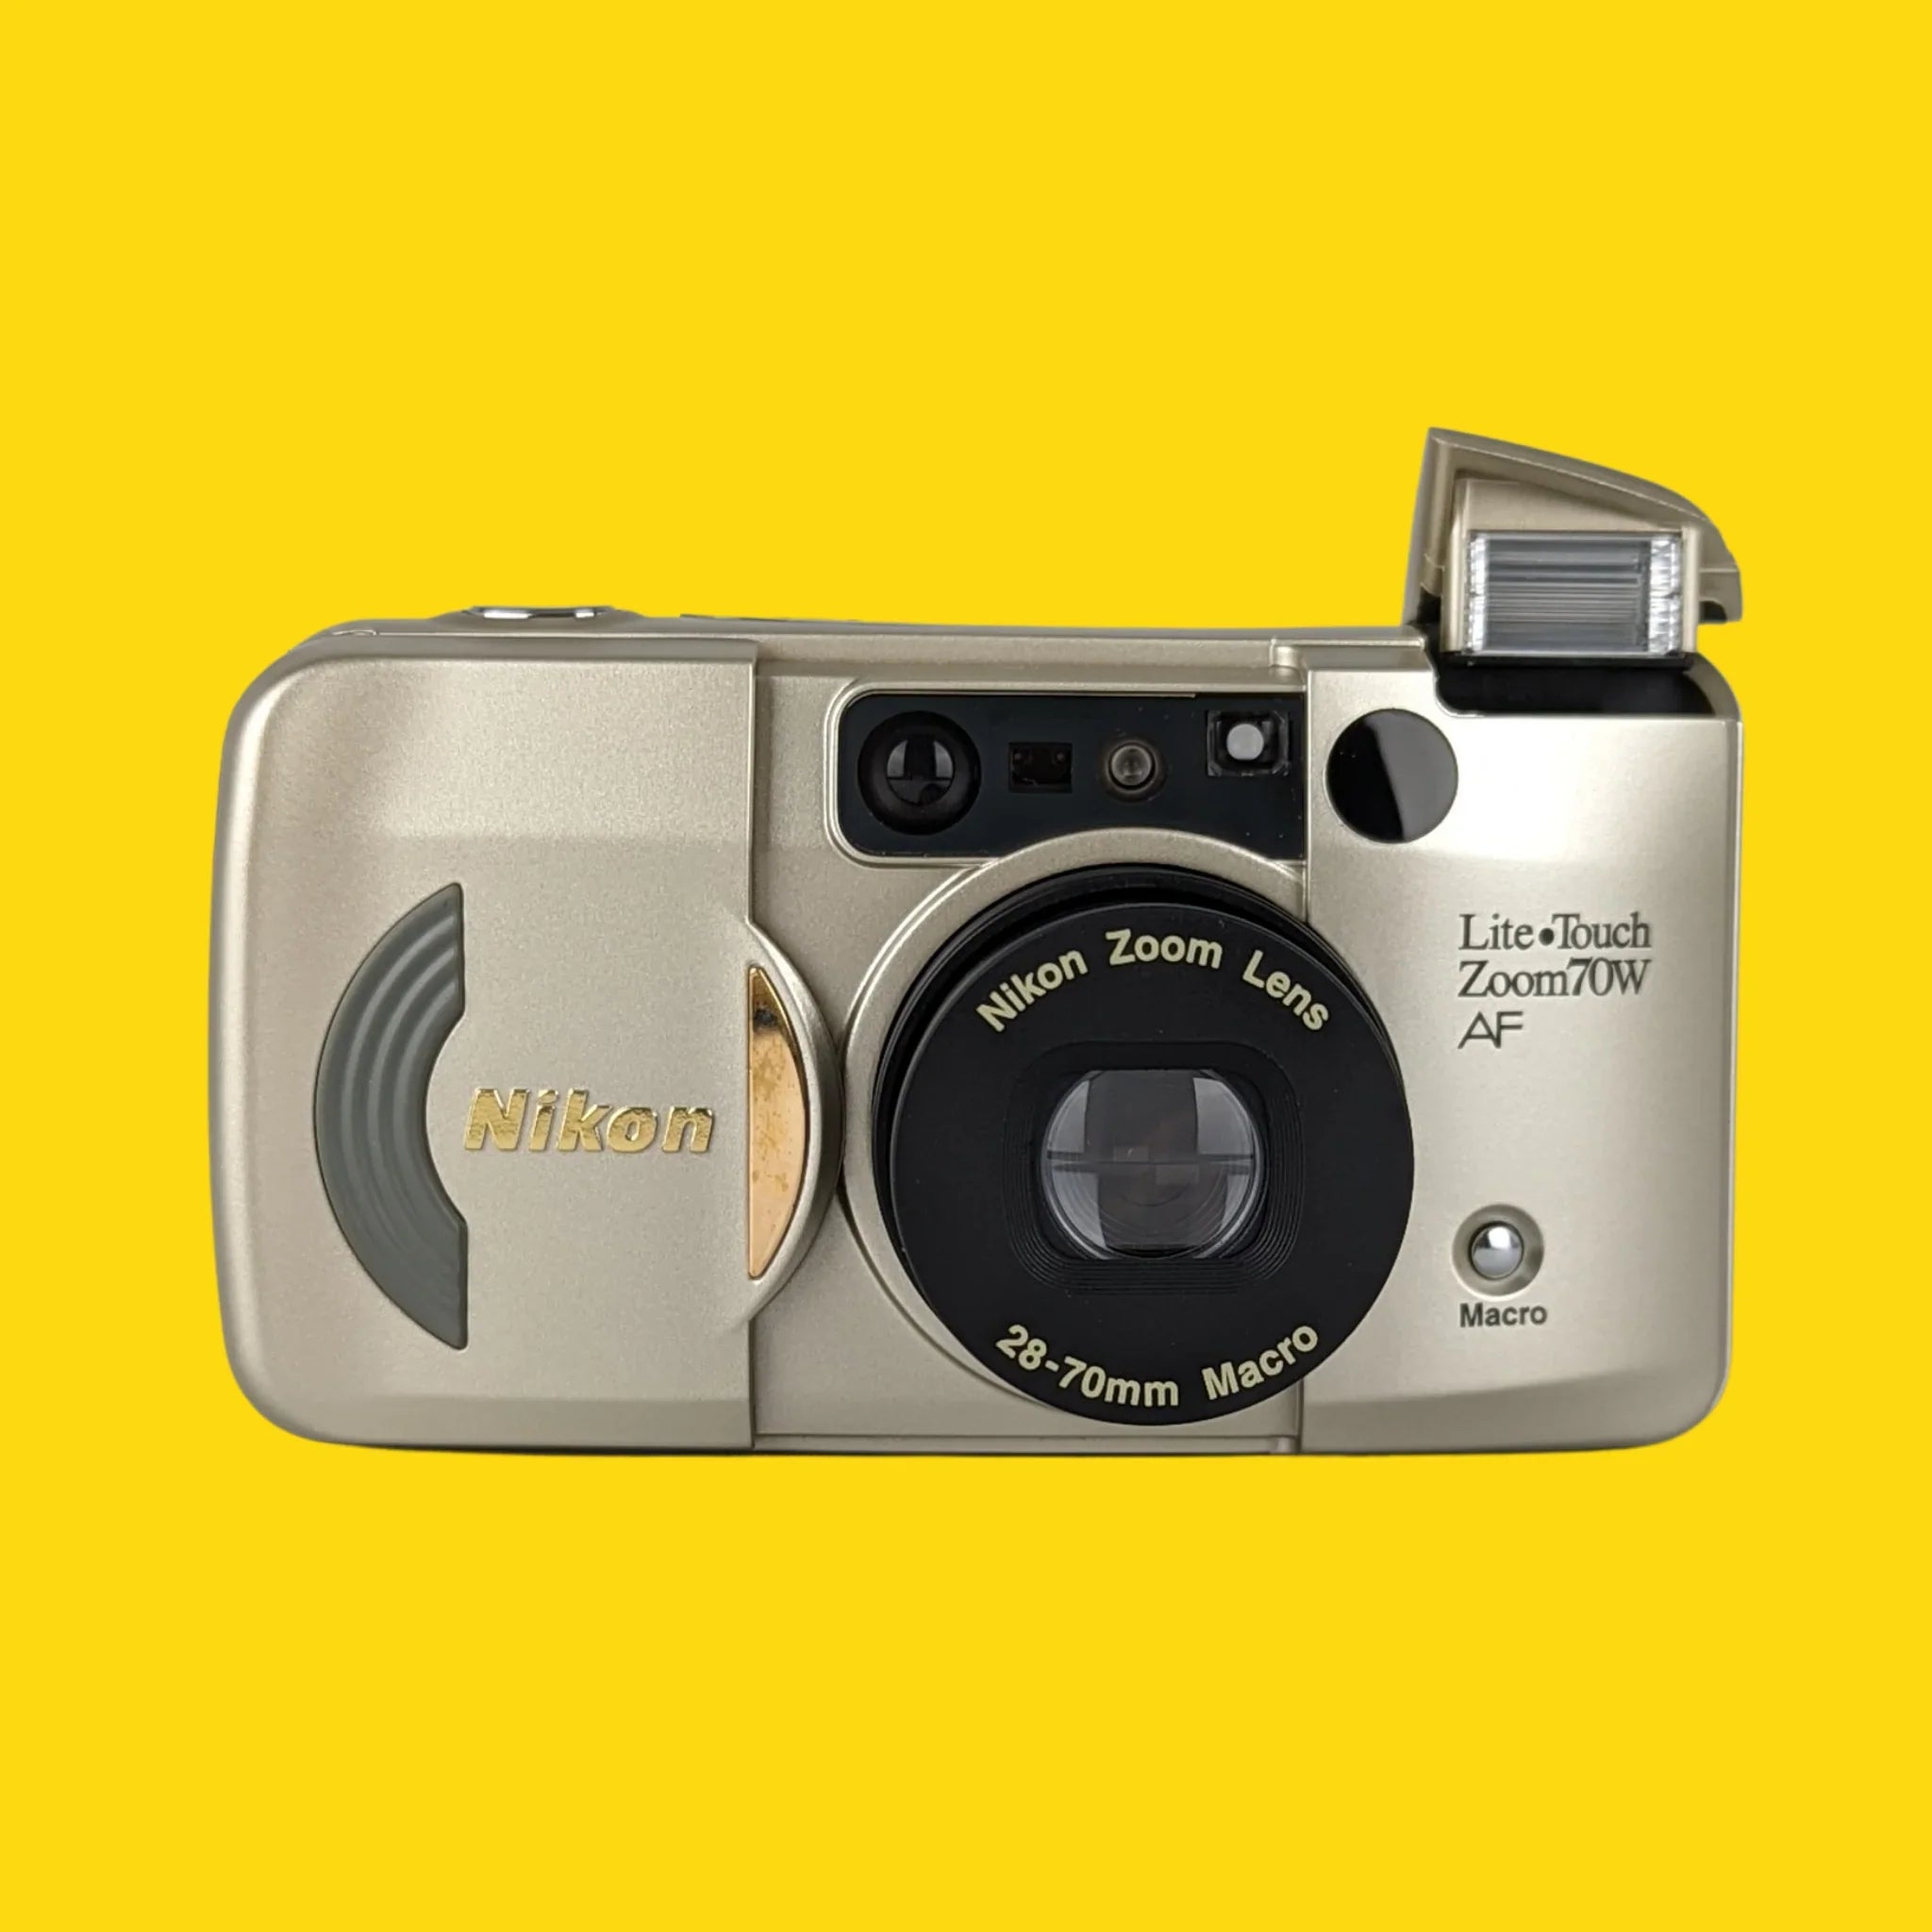 ニコン ライト ズーム 70w 35mm フィルム カメラ ポイント アンド シュート – Film Camera Store